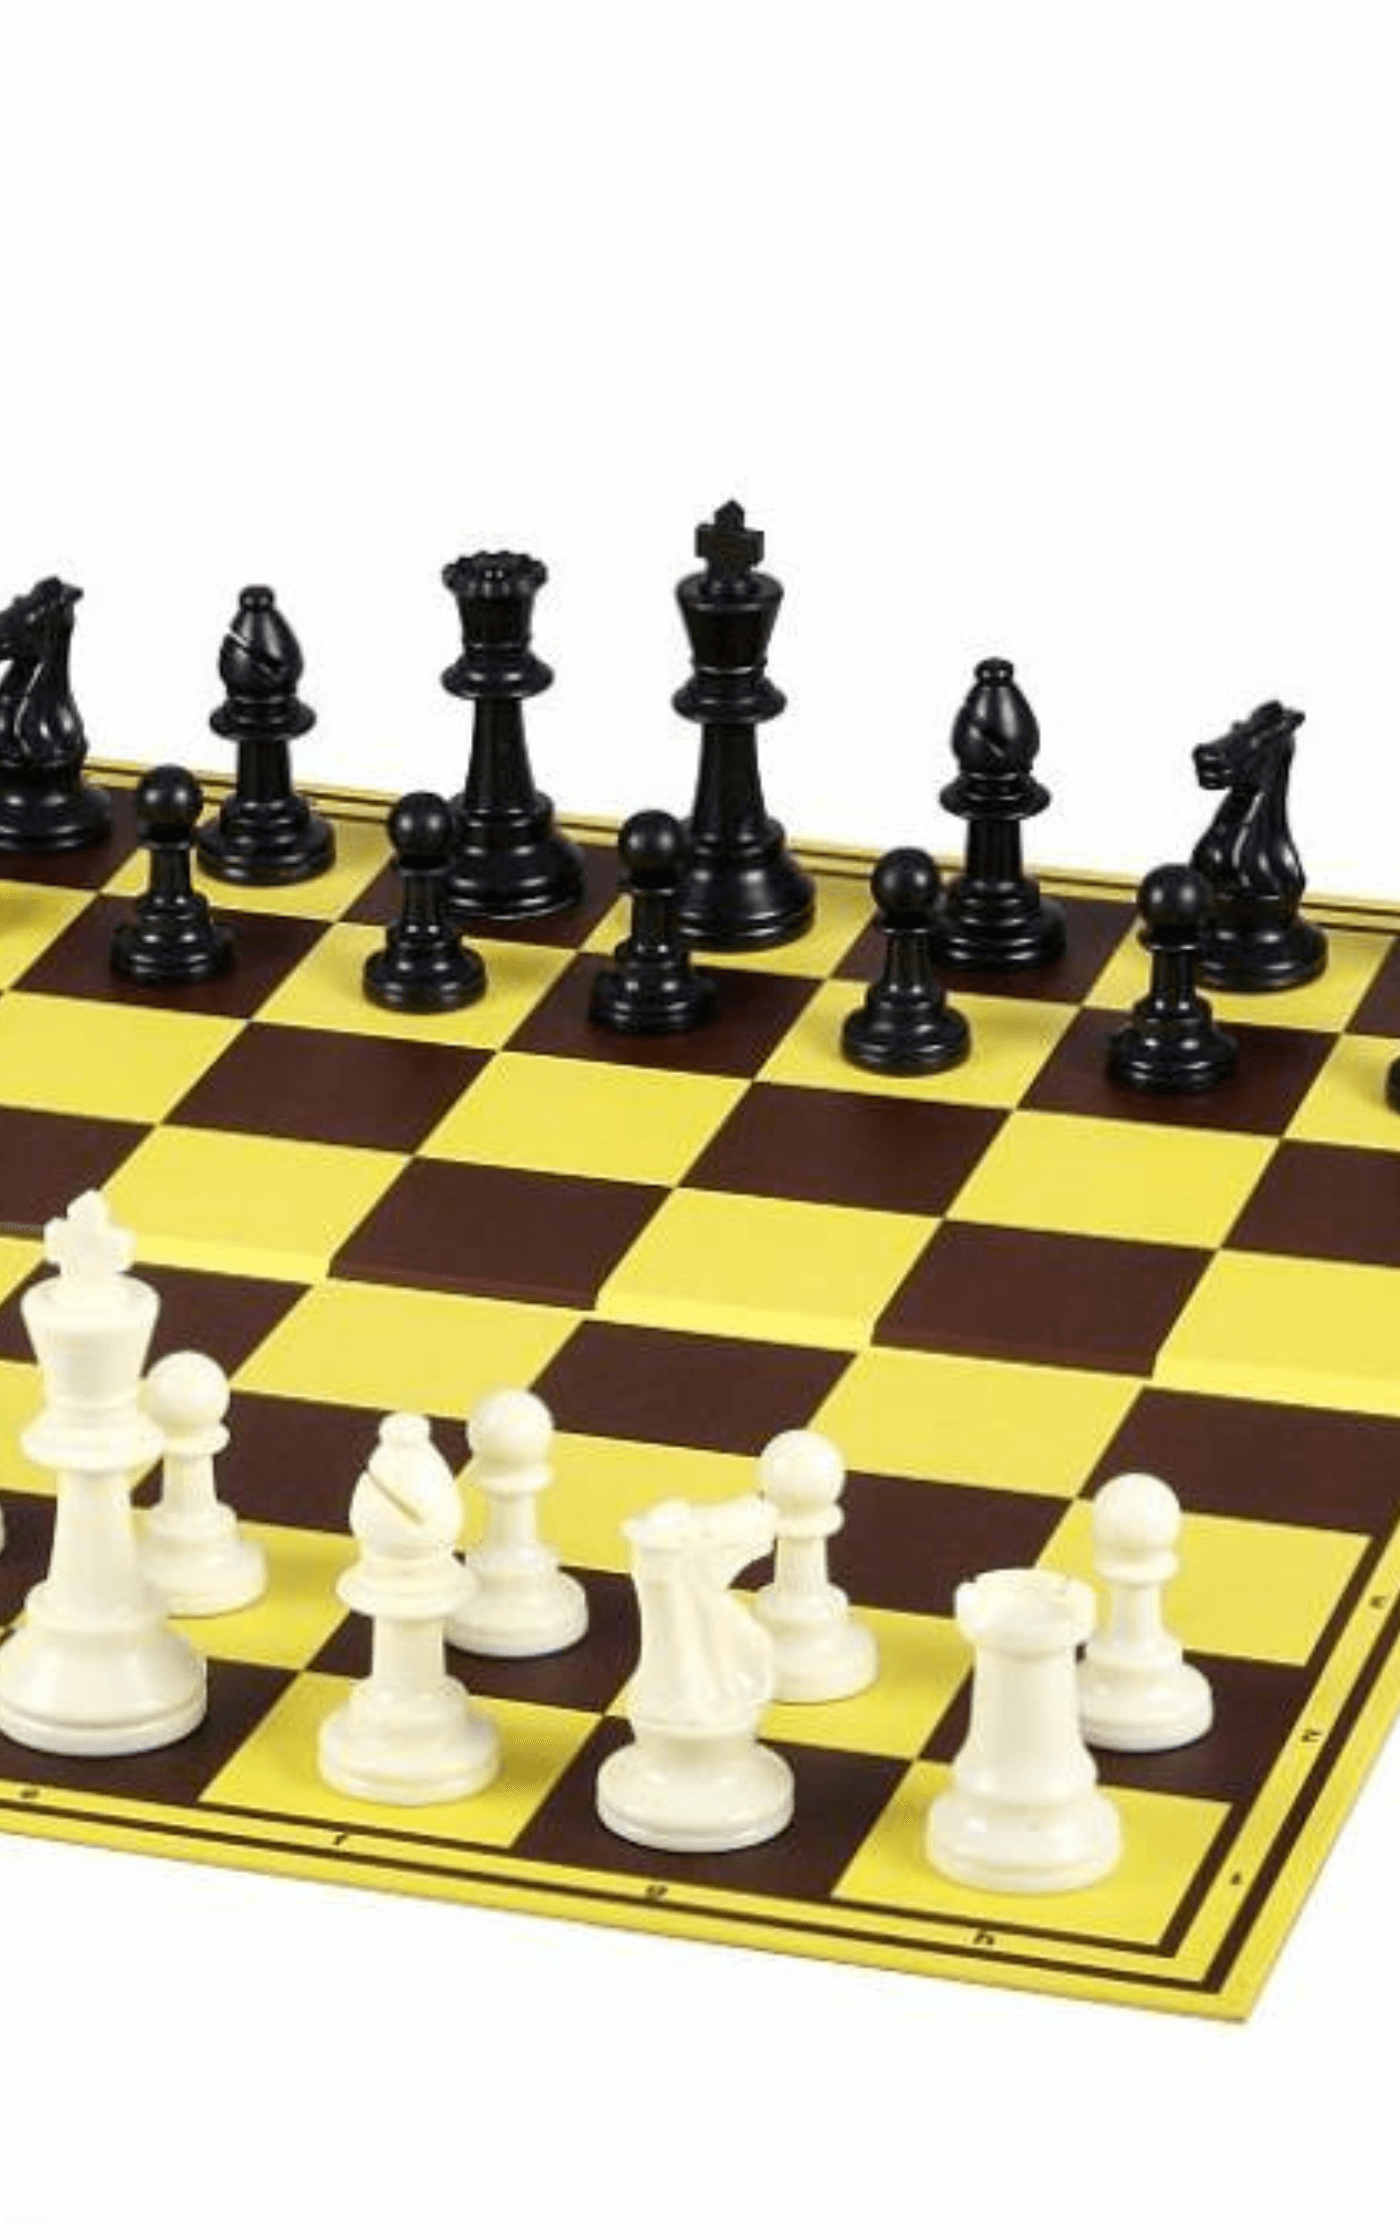 Figury szachowe Staunton nr 6, białe/czarne, dociążane metalem